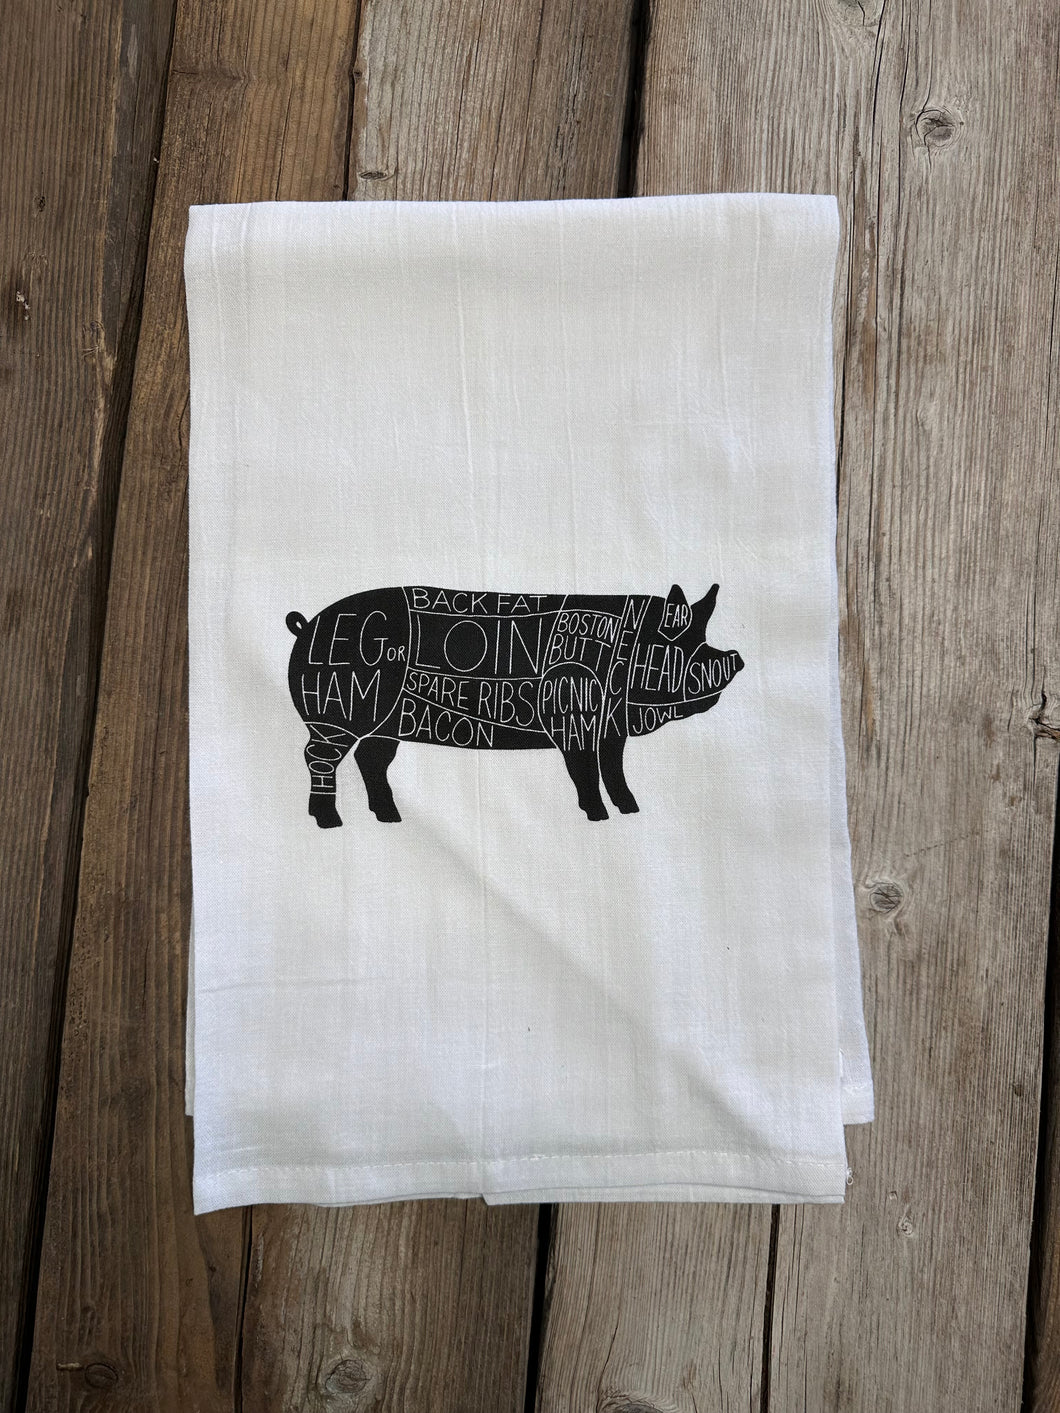 Pork Cuts Tea Towel